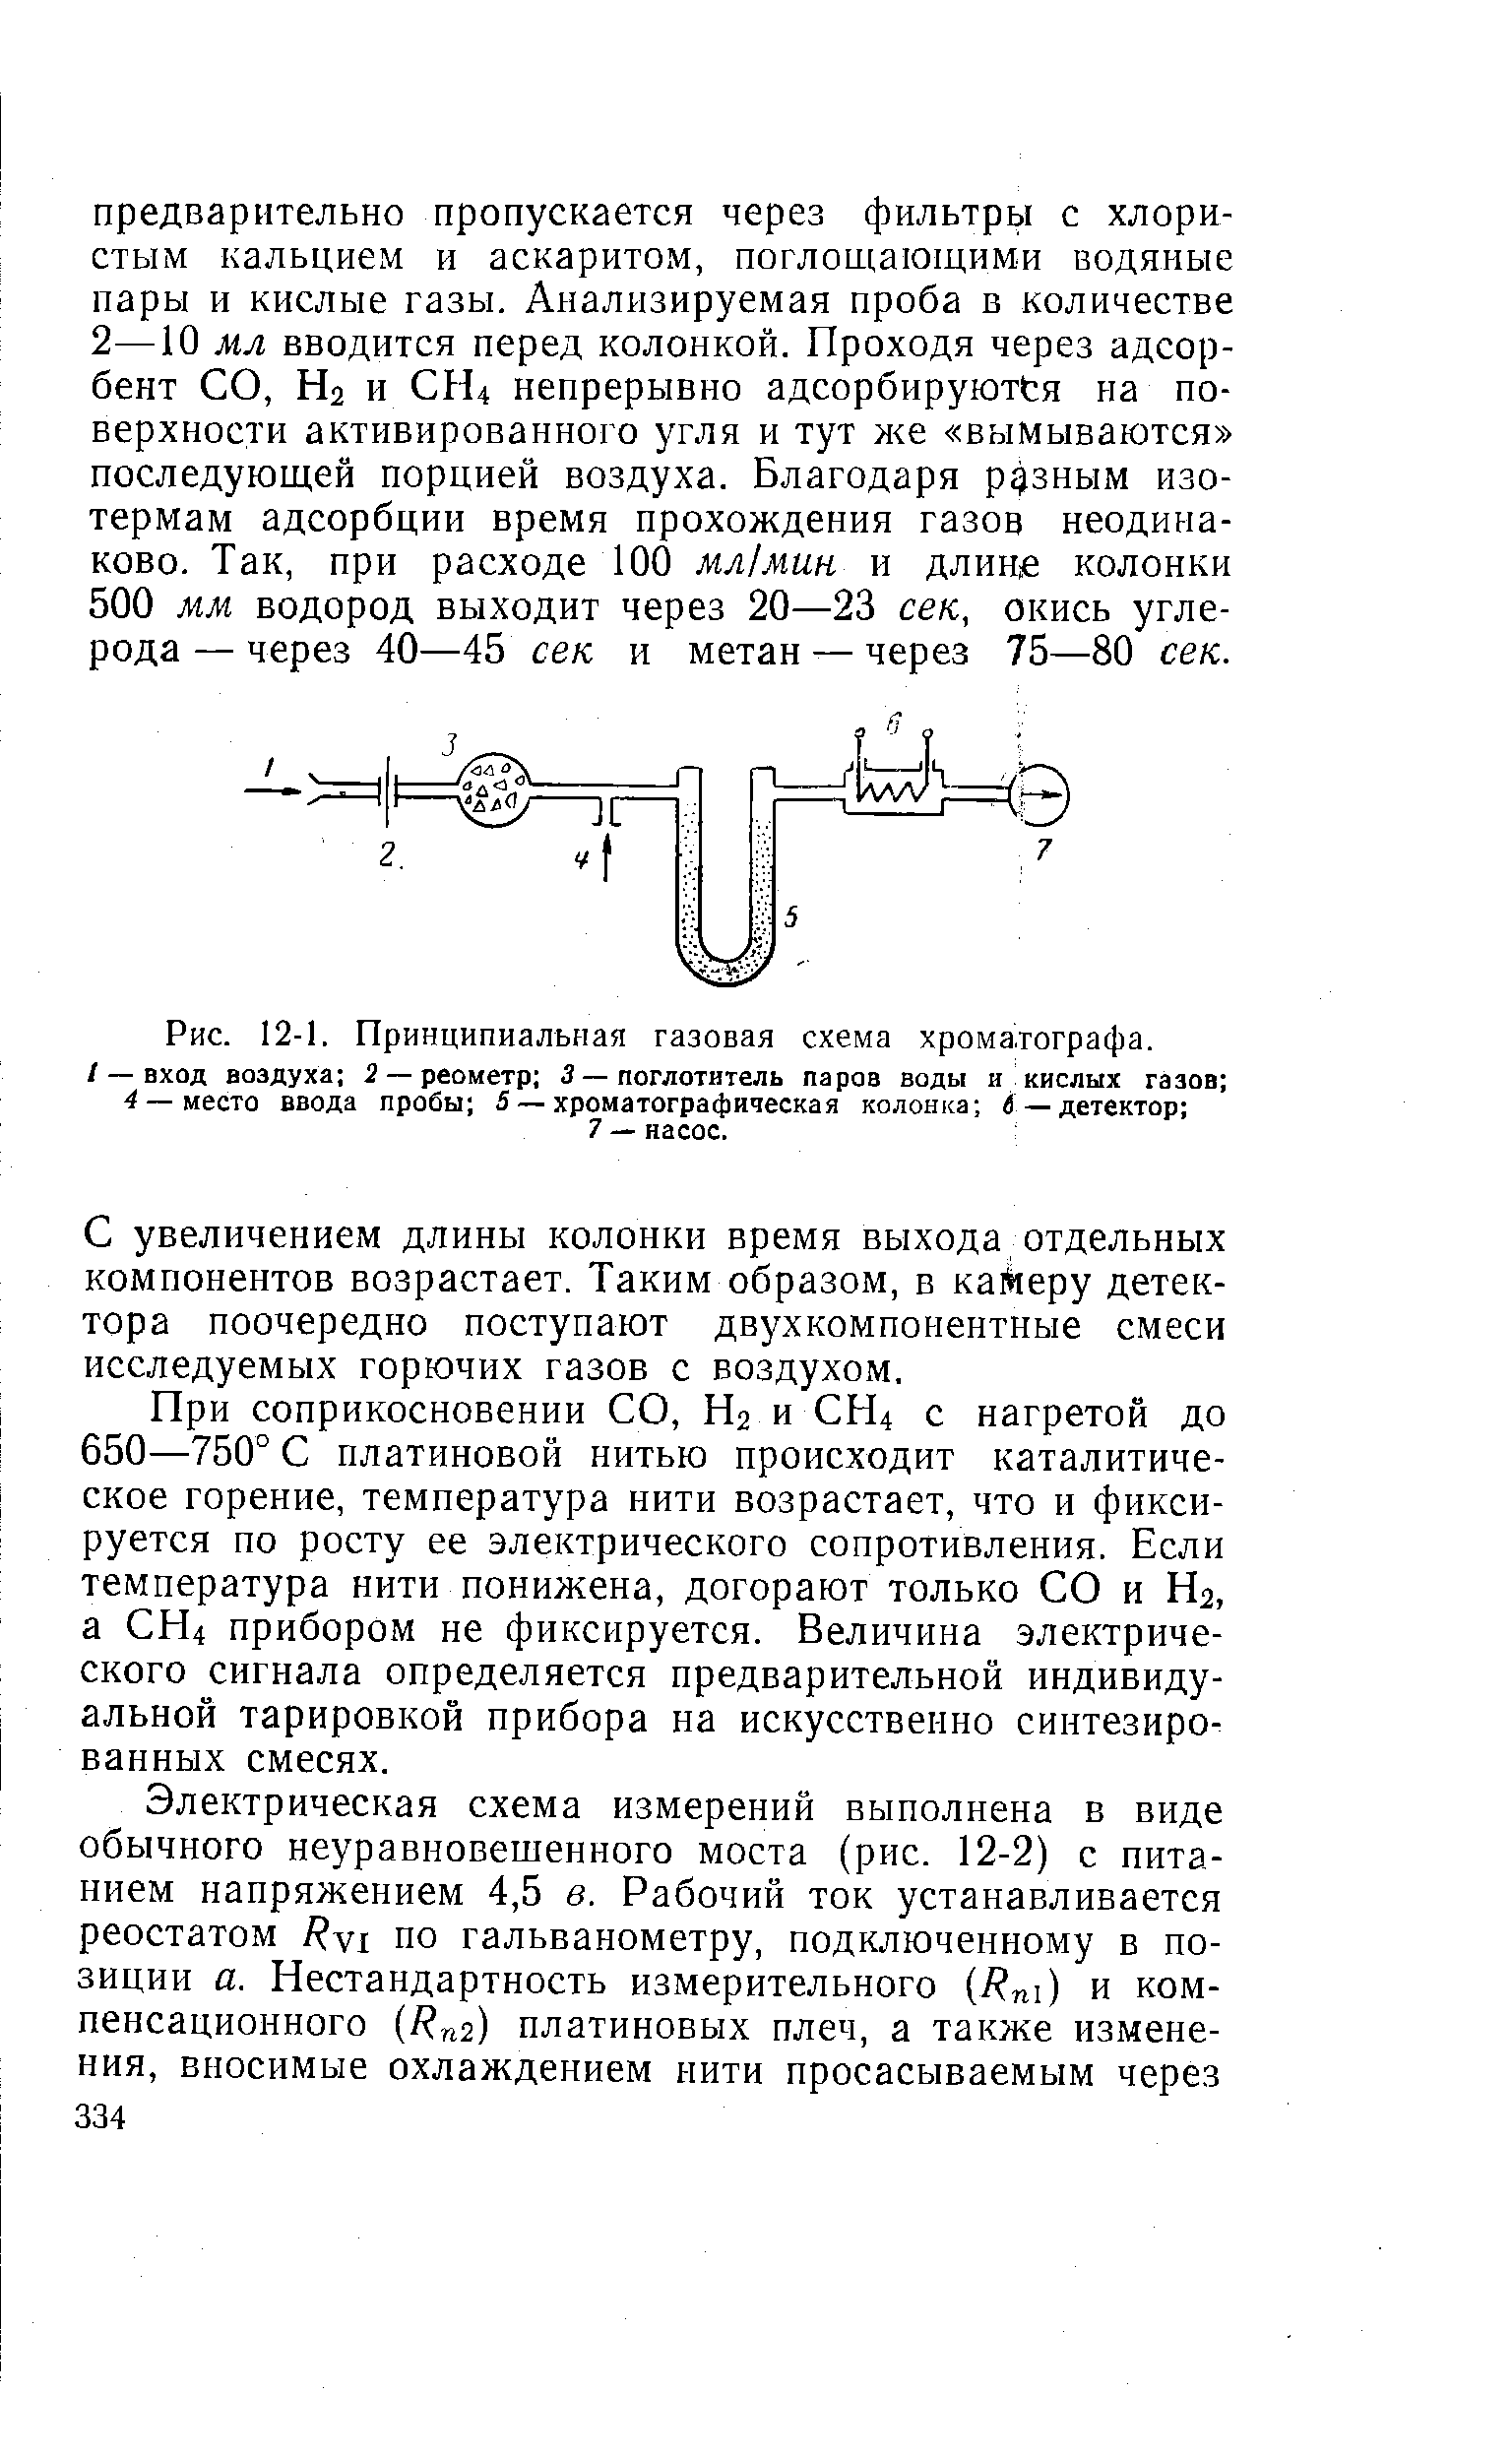 Рис. 12-1. Принципиальная газовая схема хрома,тографа.
